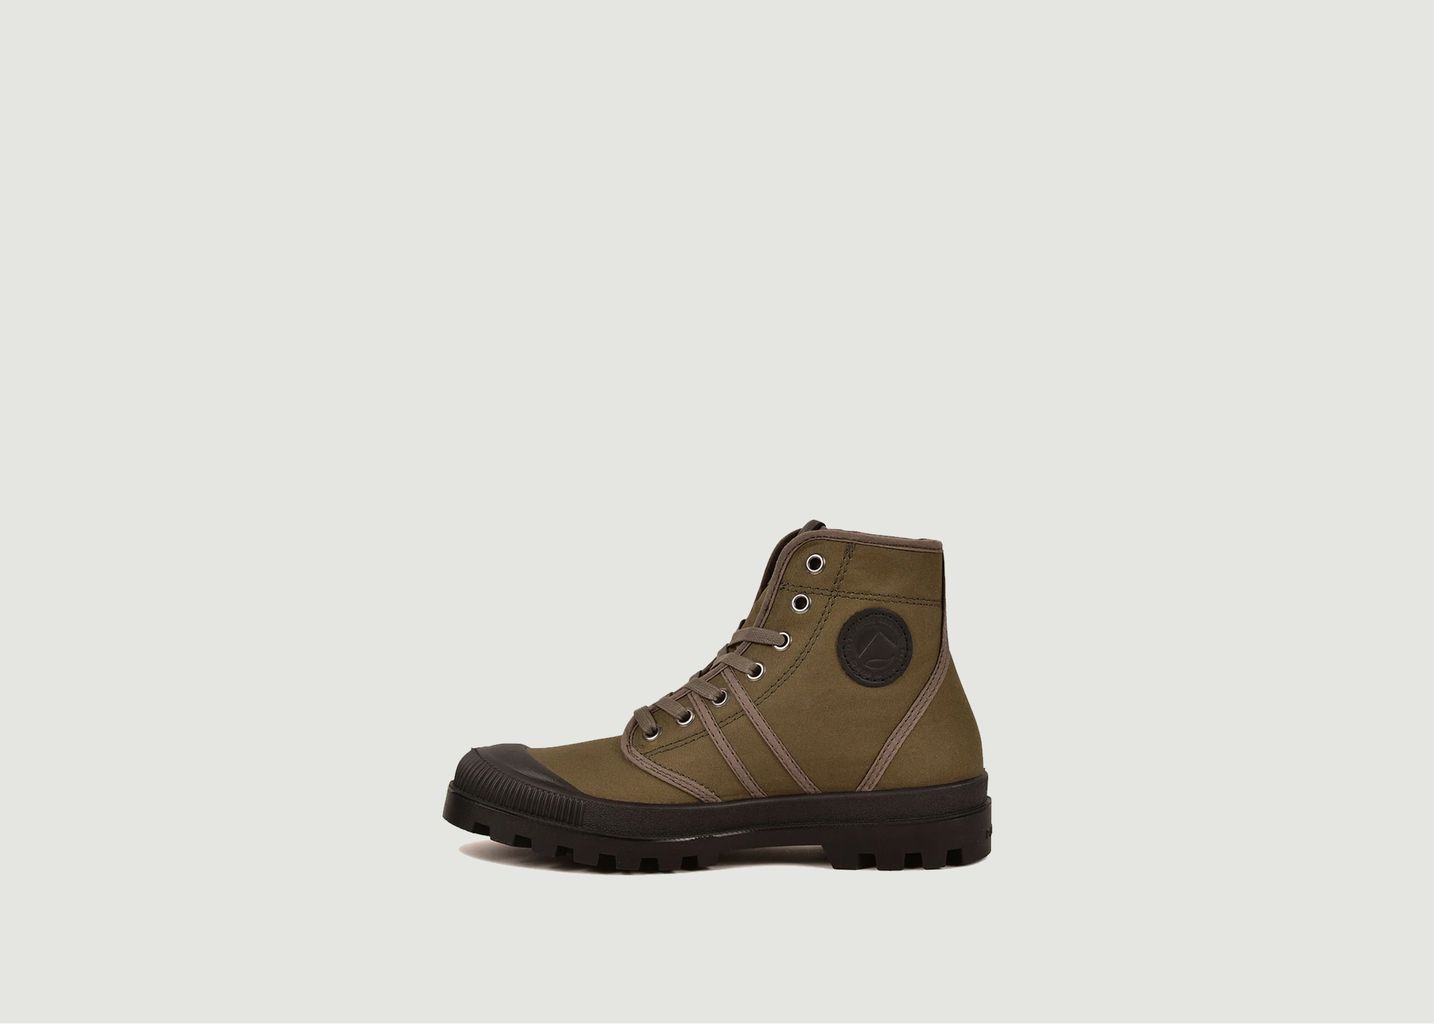 Authentic Boots - Pataugas